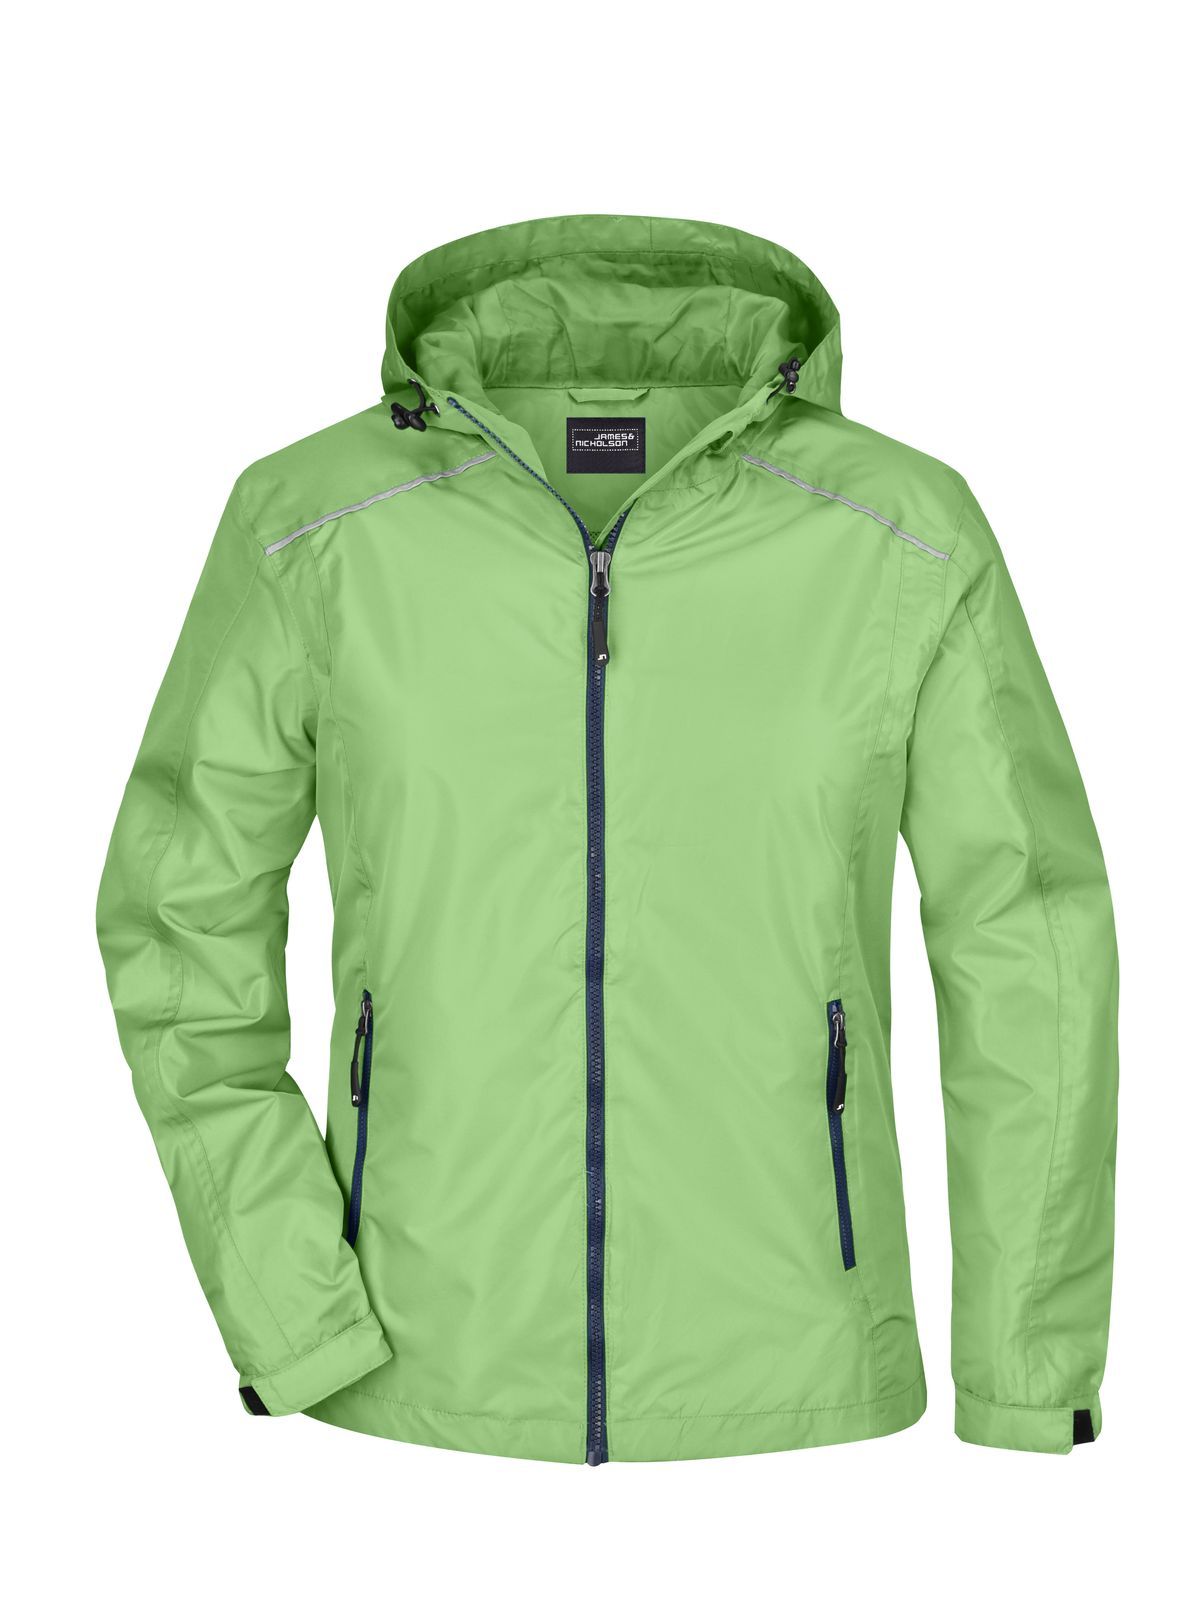 ladies-rain-jacket-spring-green-navy.webp